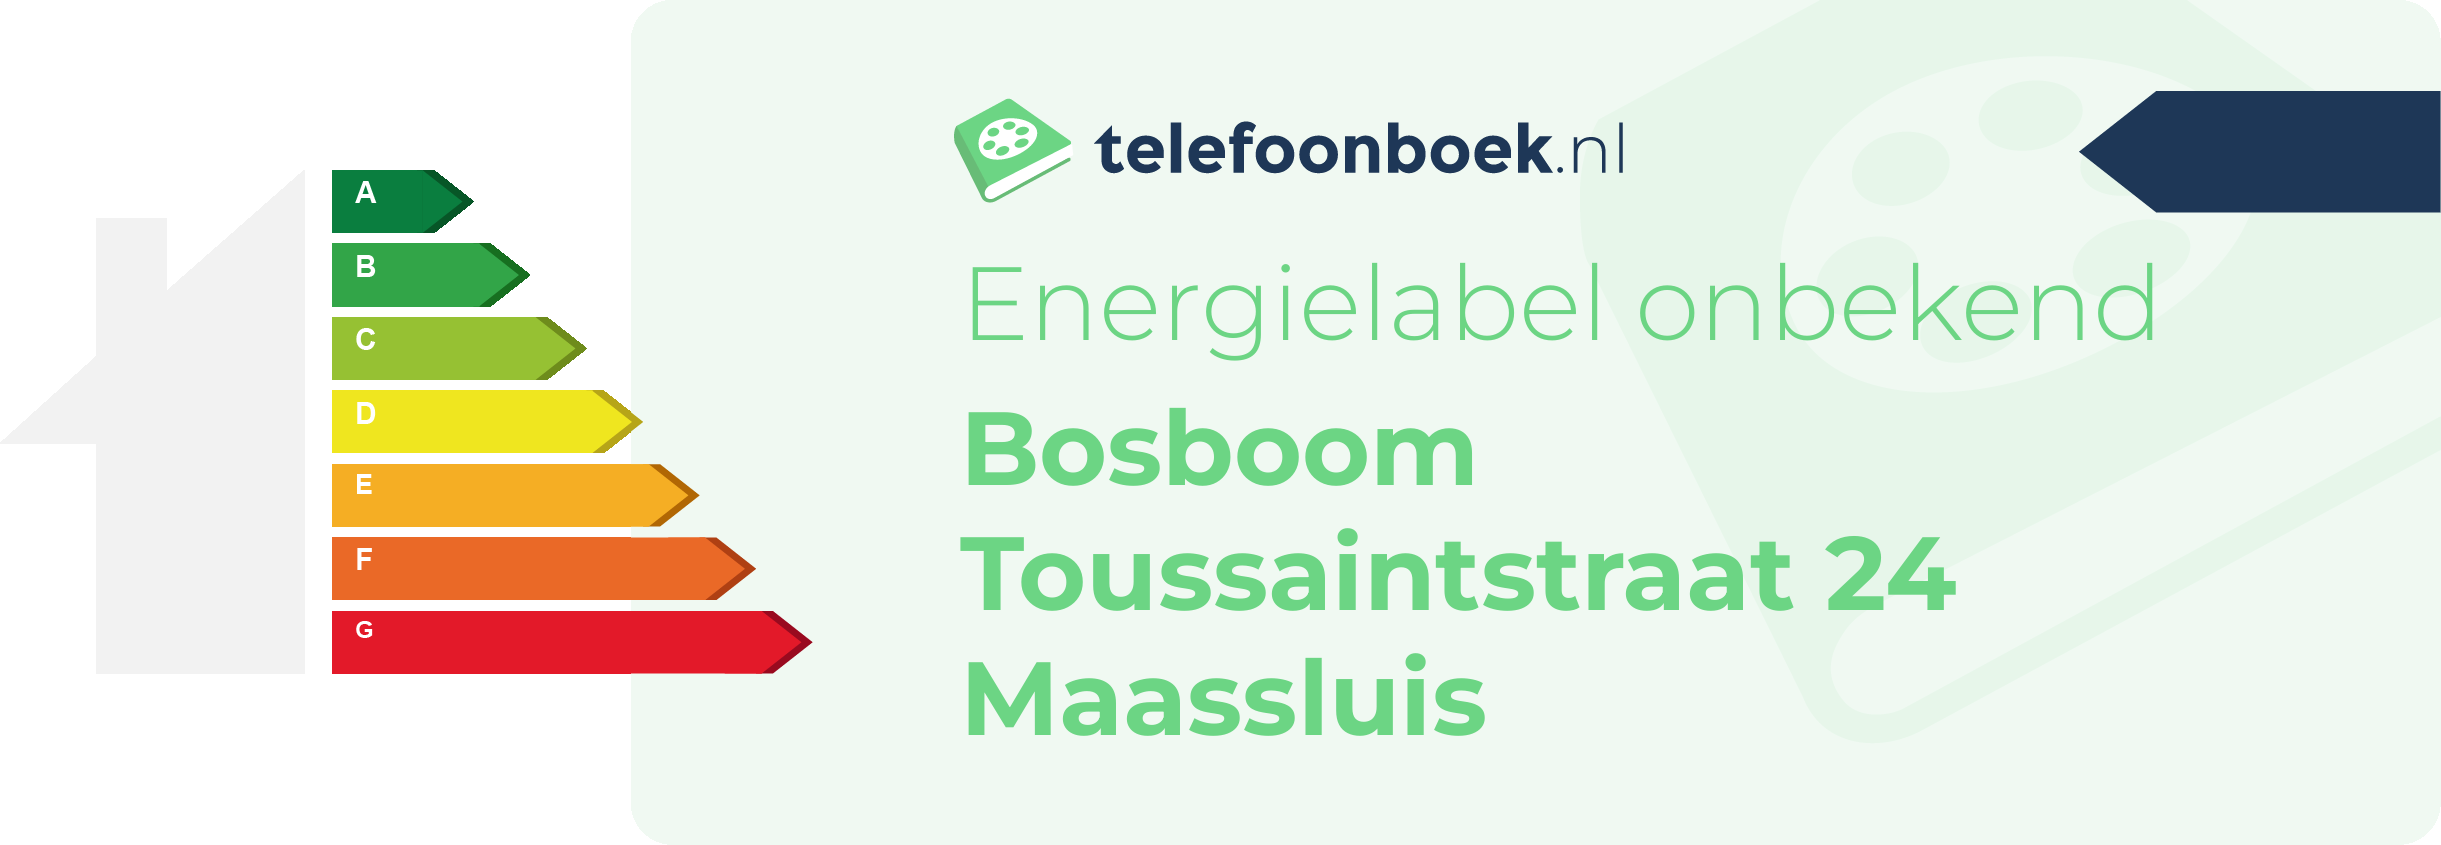 Energielabel Bosboom Toussaintstraat 24 Maassluis